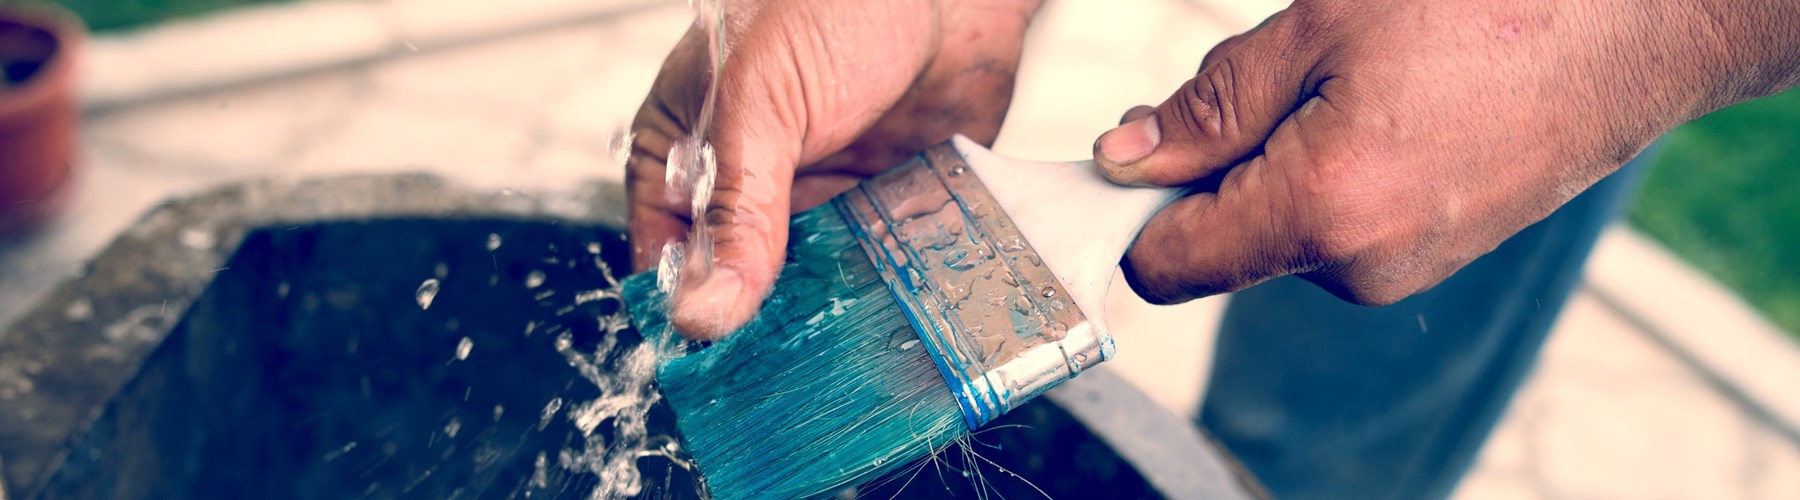 washing paint brush